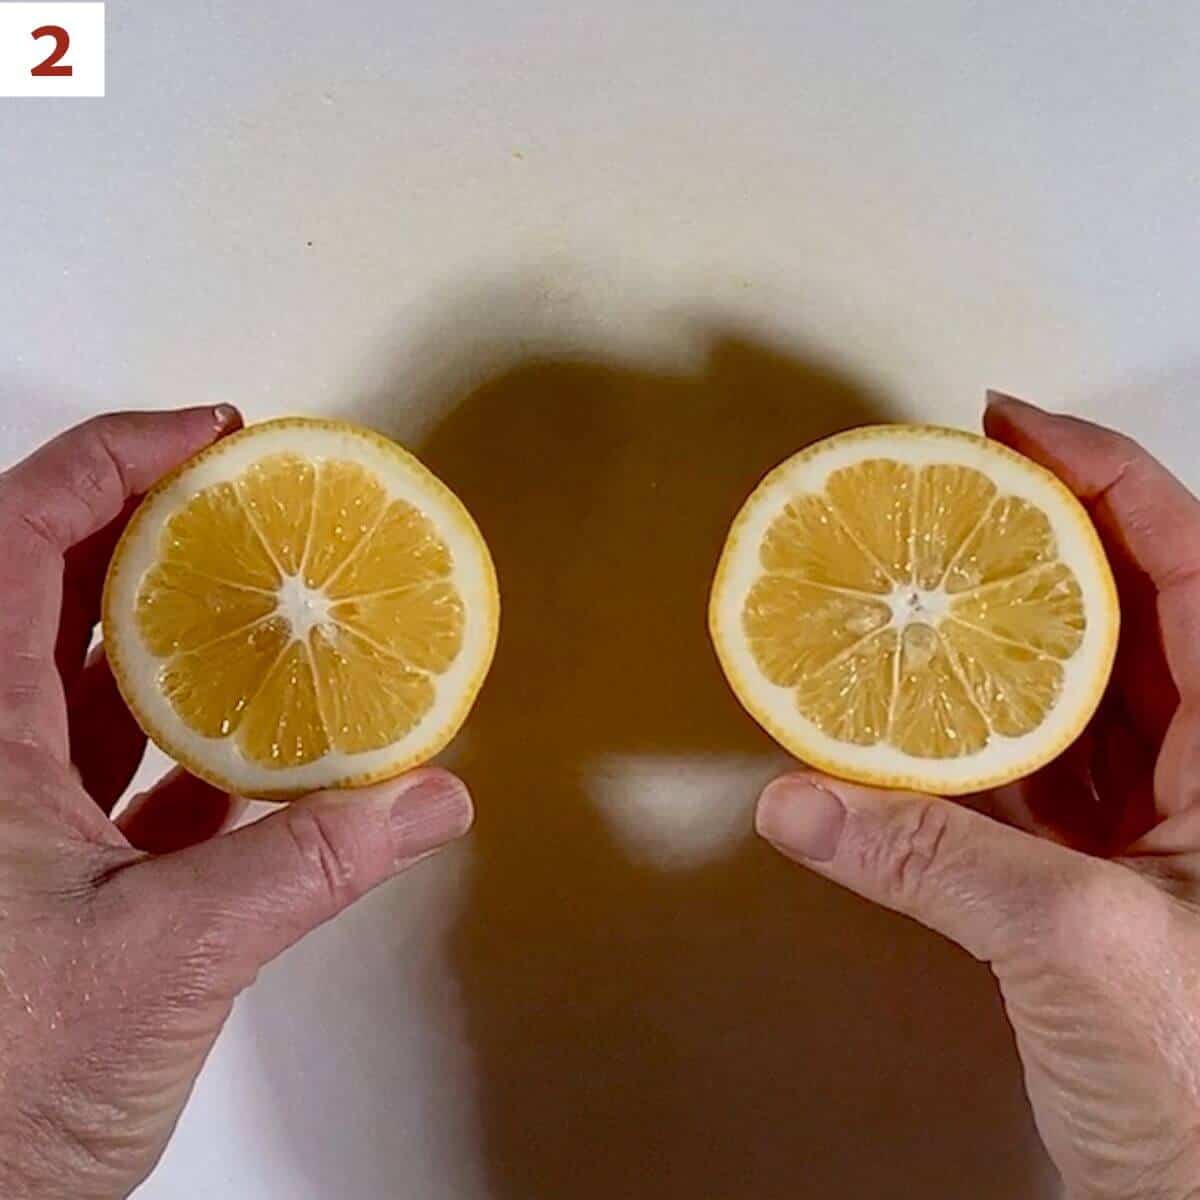 Displaying 2 cut lemon halves.